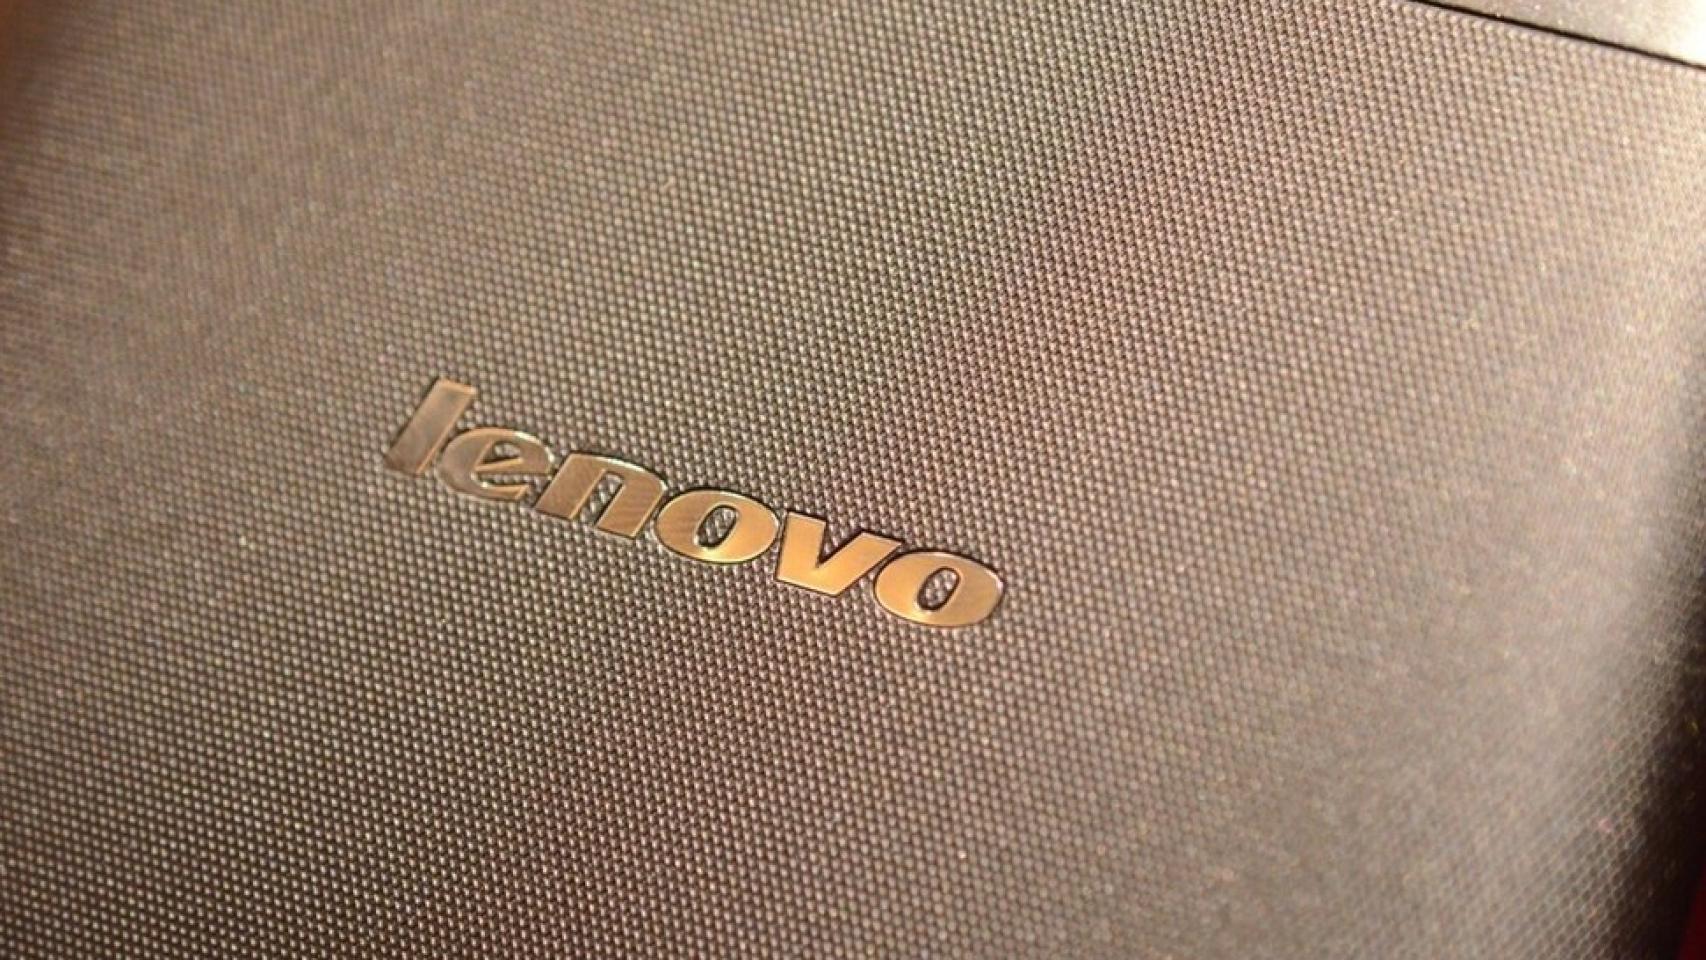 Lenovo presenta tres nuevas Tablets para competir con Nexus 7 y Kindle Fire: S6000, A3000 y A1000